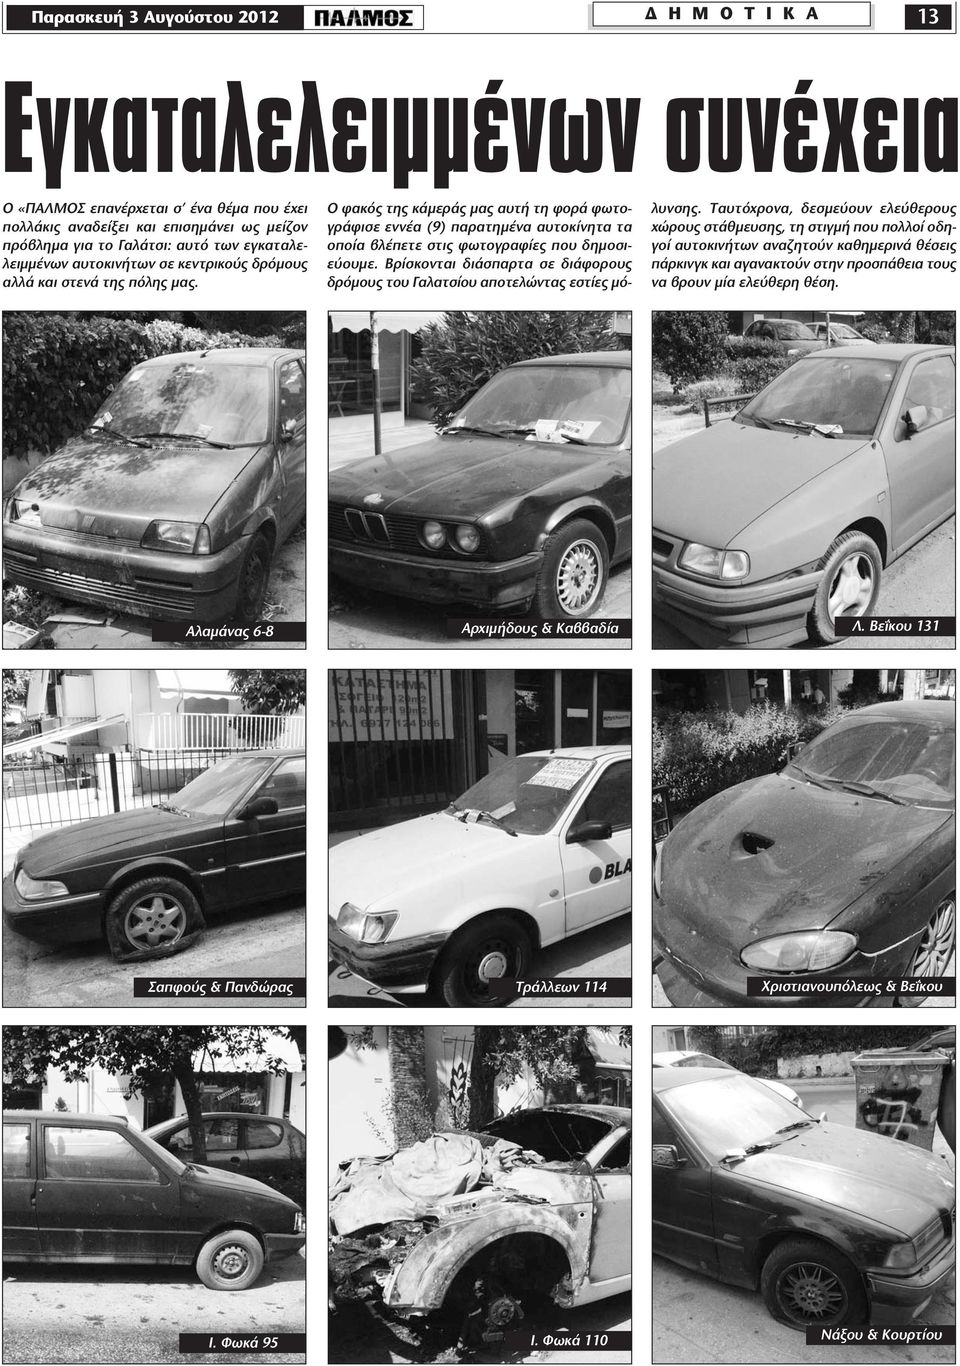 Ο φακός της κάμεράς μας αυτή τη φορά φωτογράφισε εννέα (9) παρατημένα αυτοκίνητα τα οποία βλέπετε στις φωτογραφίες που δημοσιεύουμε.